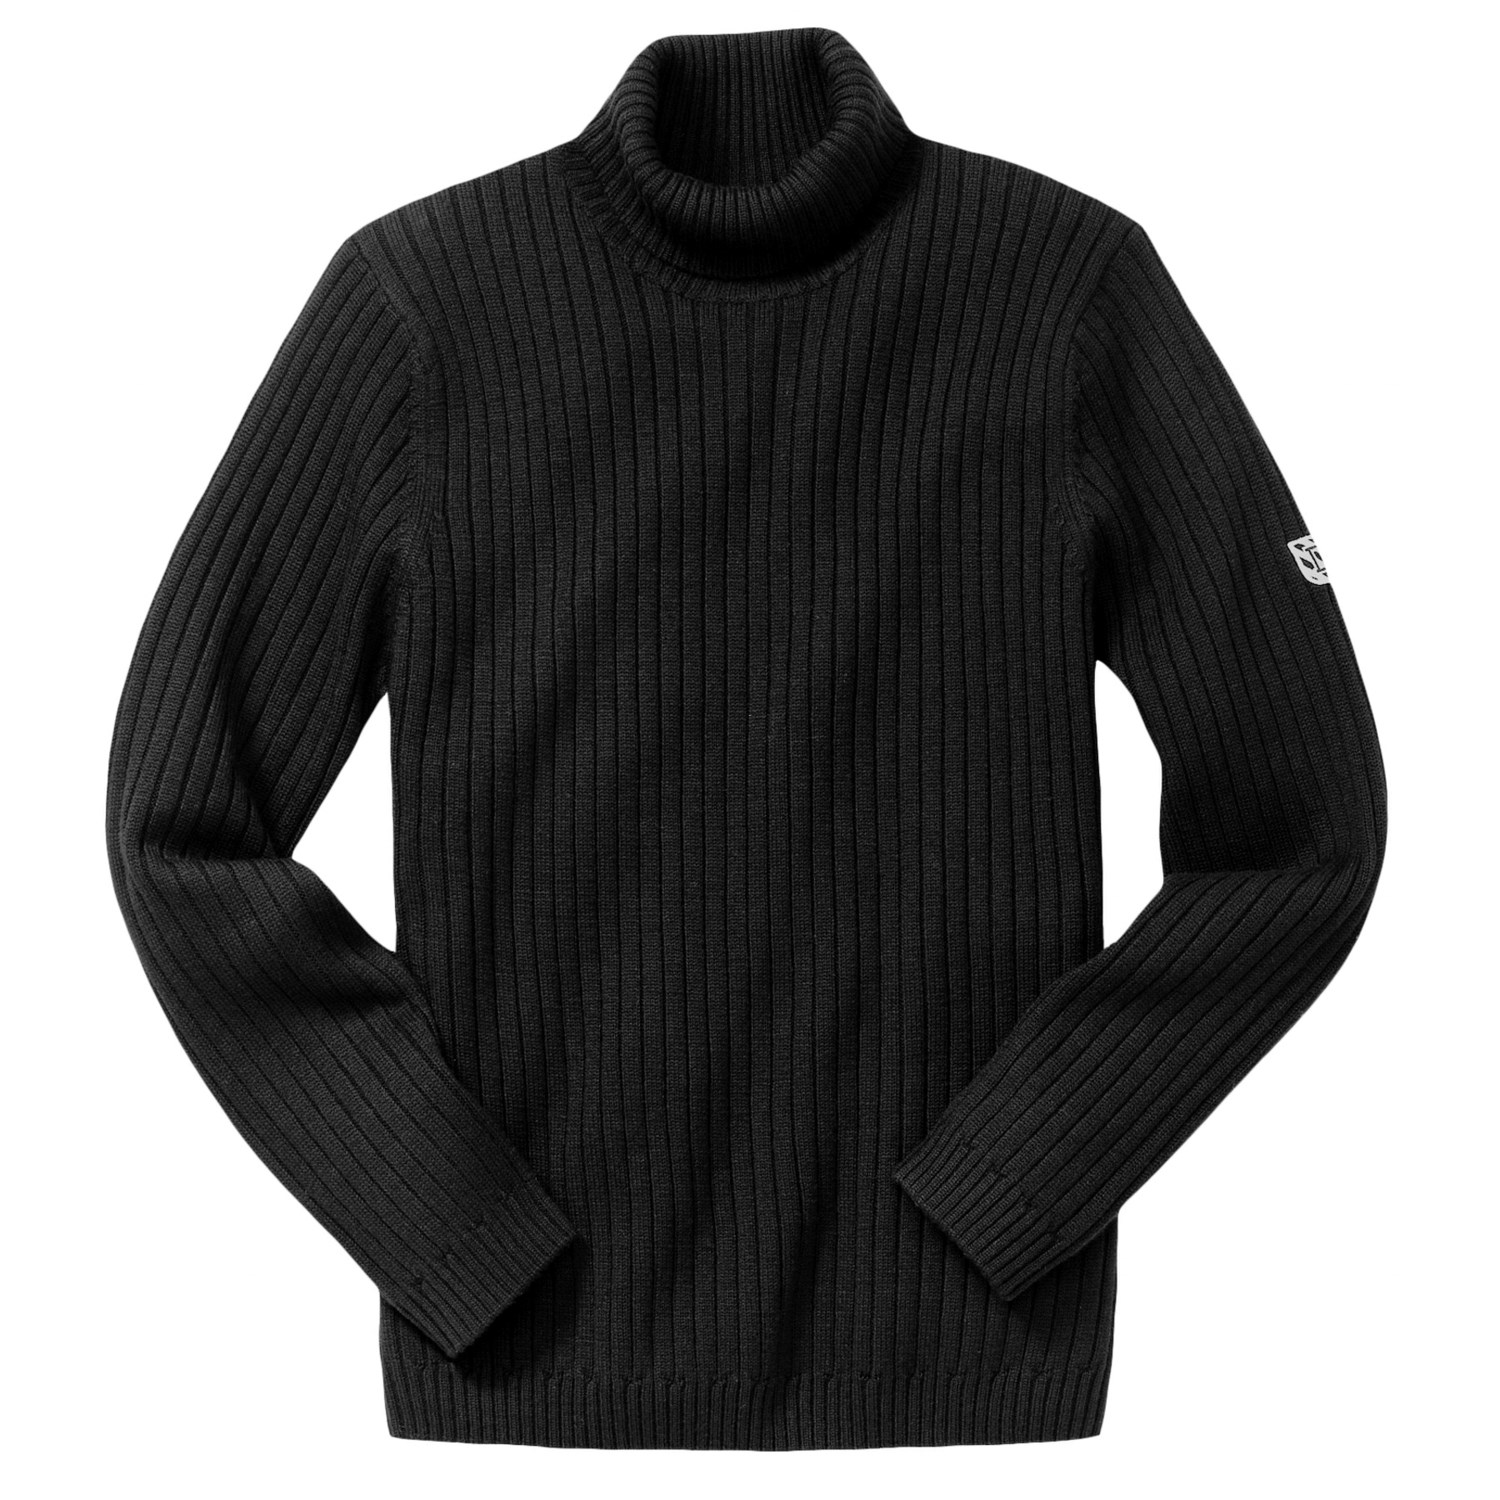 Dunning Vintage Ribbed Turtleneck Sweater (For Men) 3224T - Save 50%